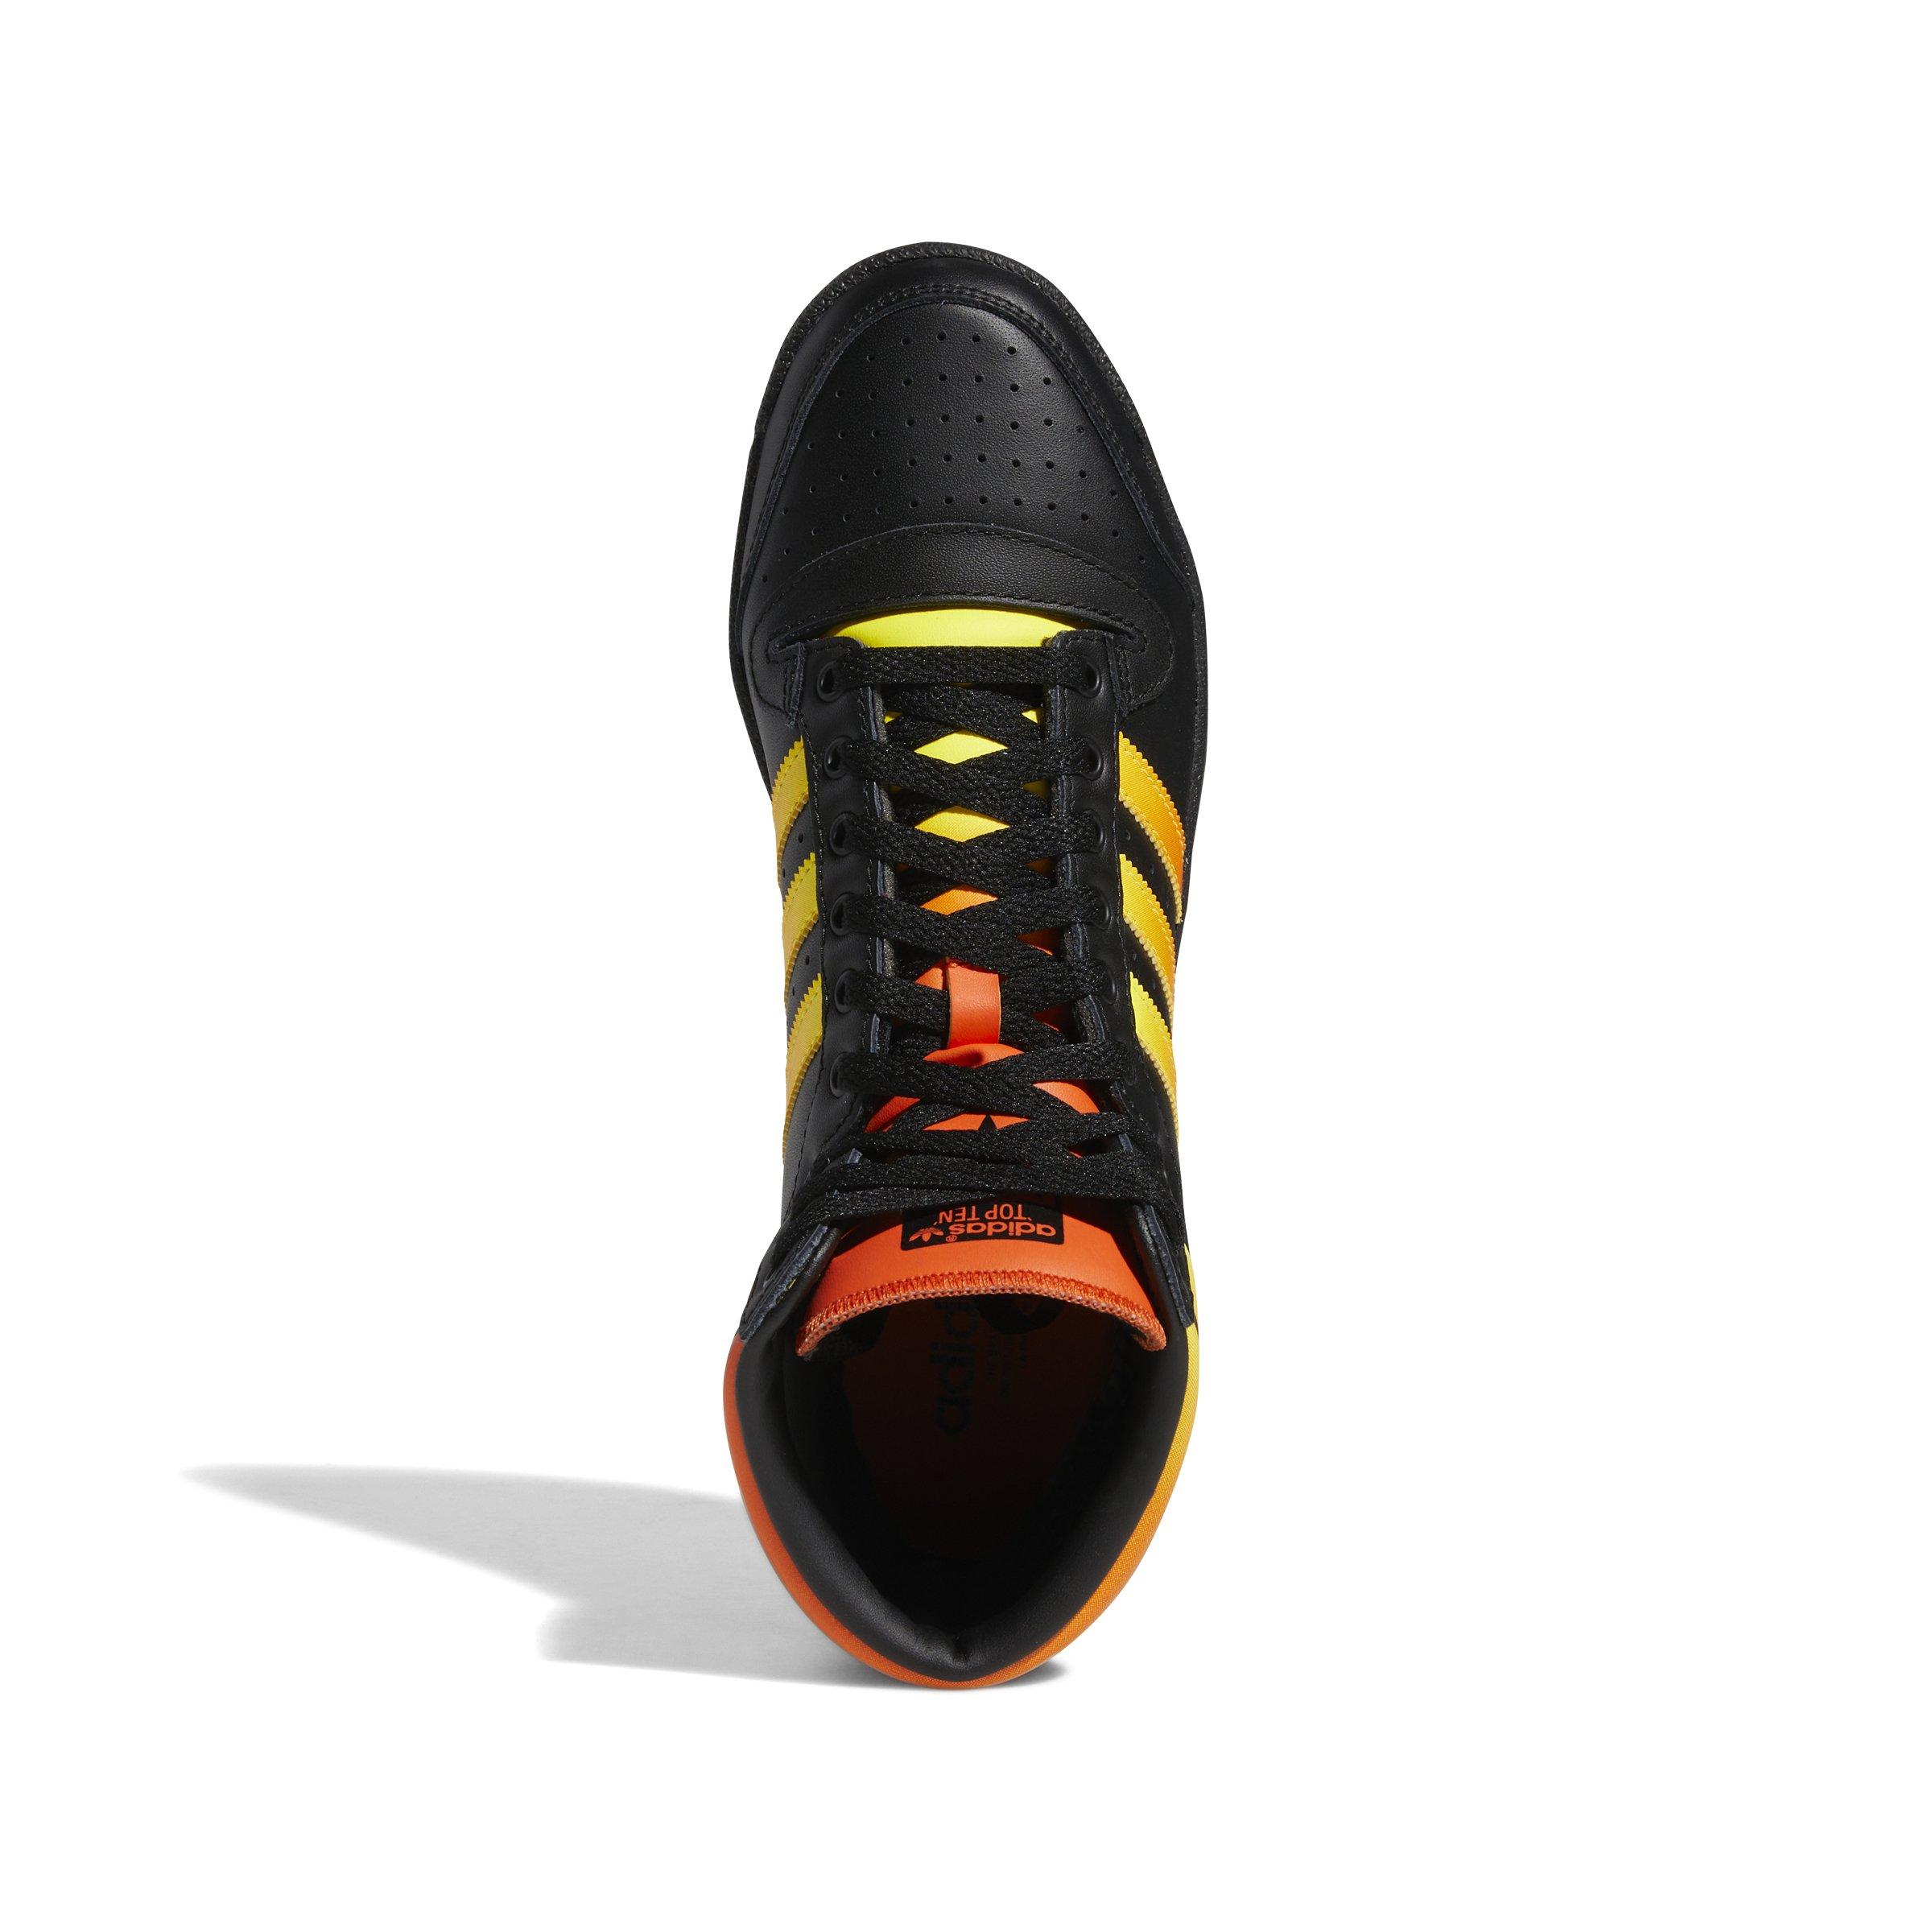 Adidas Men's Top Ten Hi Core Black Shoes, Coreblackvividred / 10